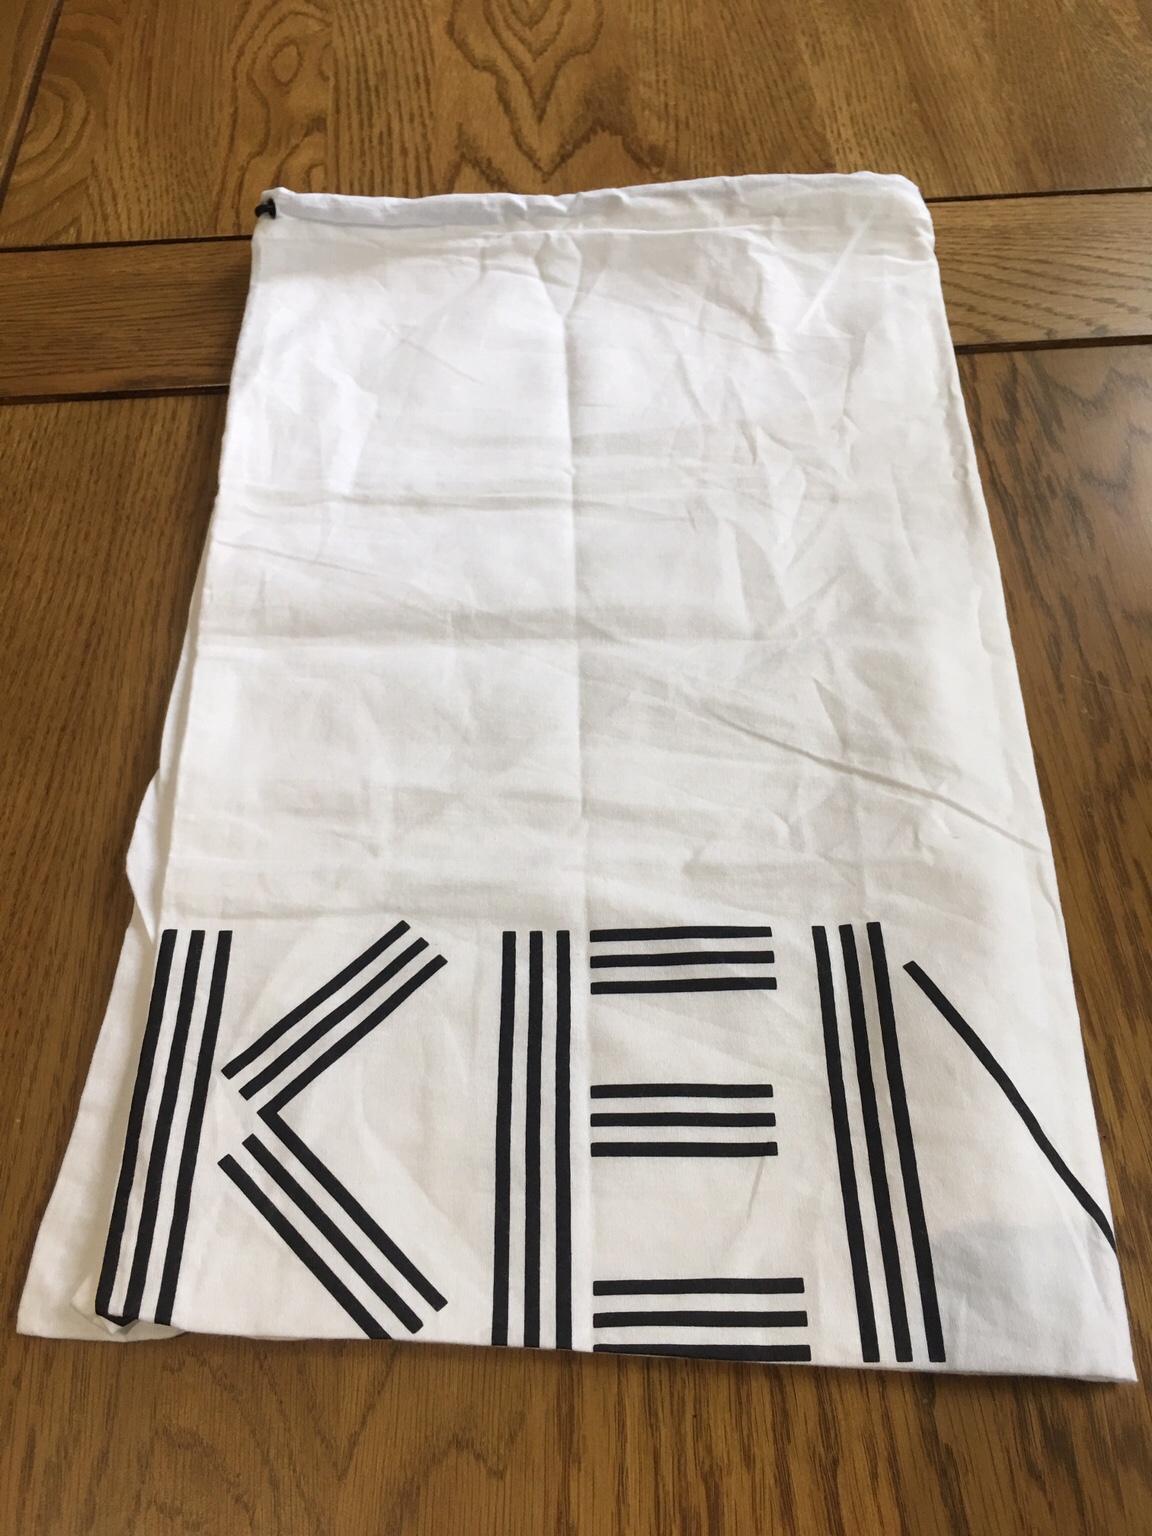 kenzo dust bag